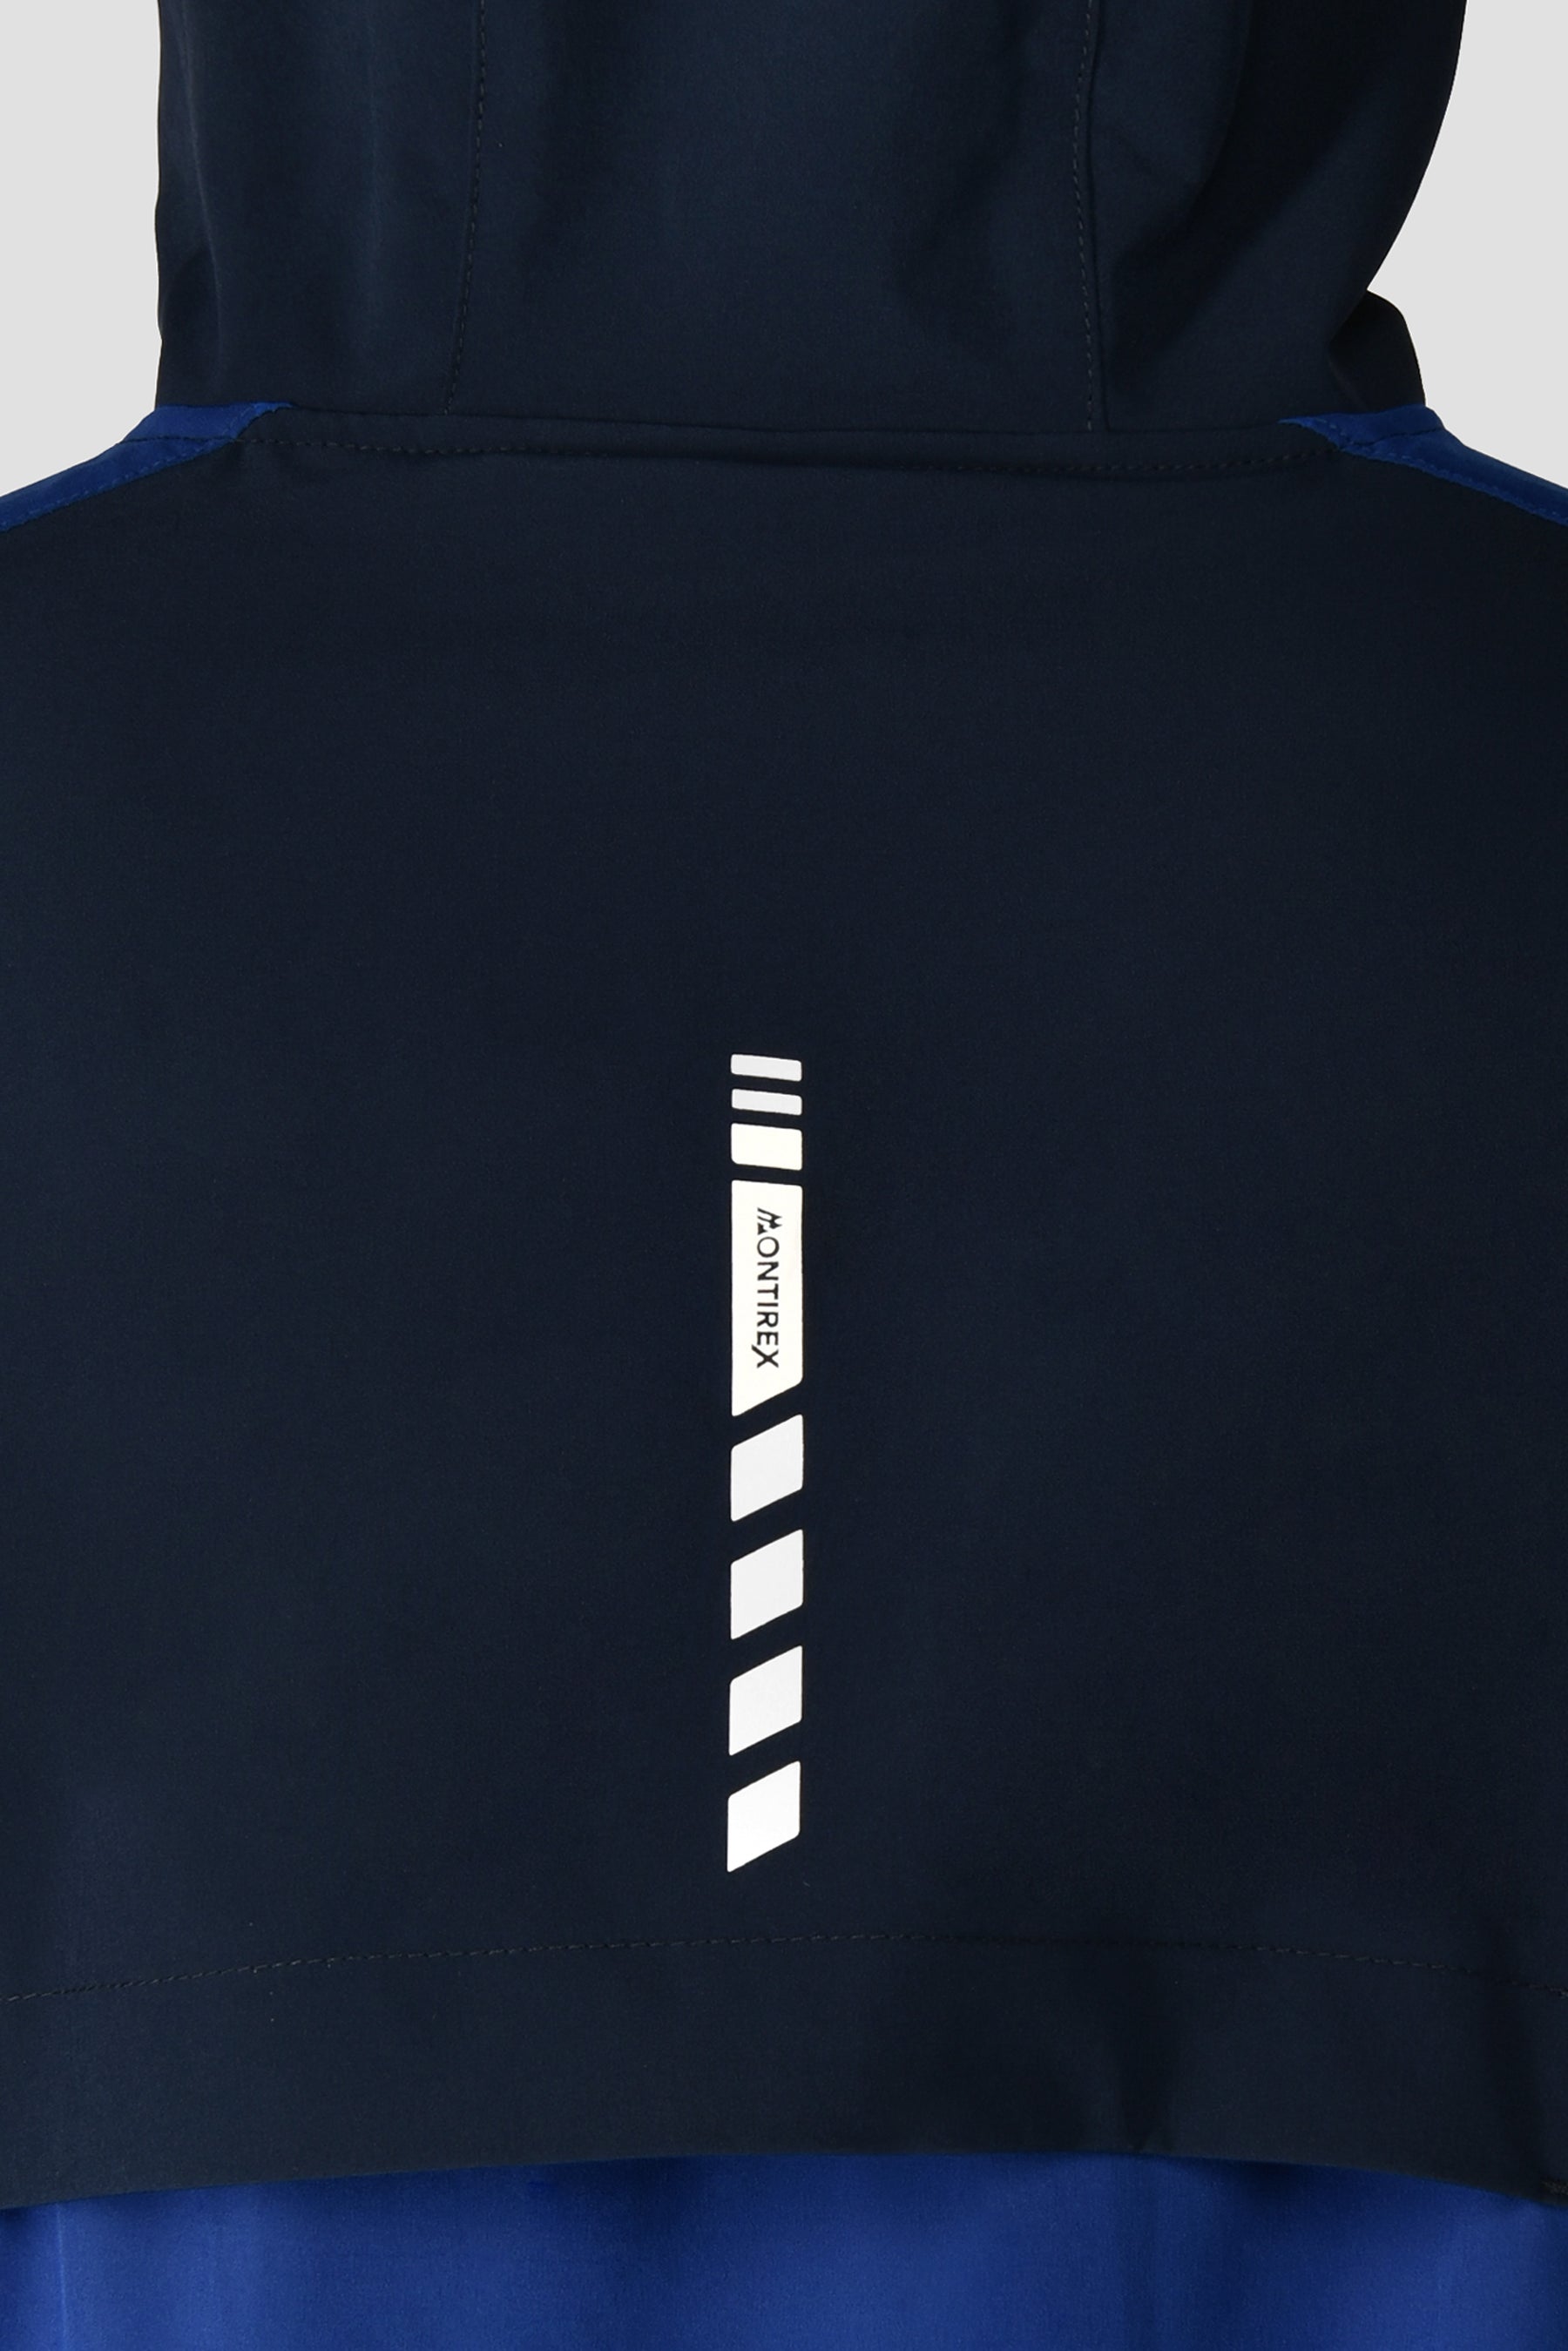 Men's Vector Jacket - Midnight Blue/Marine Blue